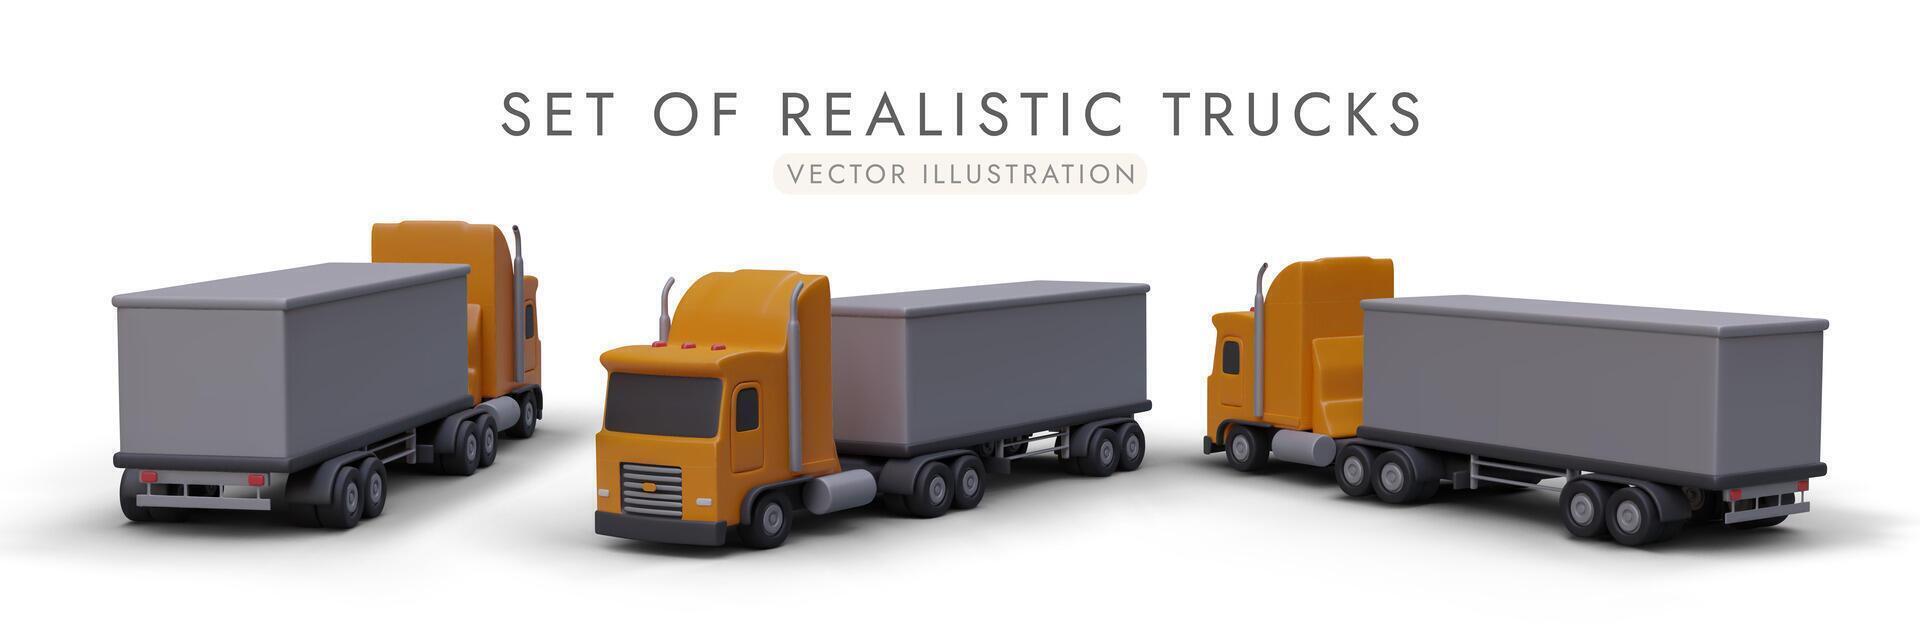 conjunto do realista caminhões dentro diferente posições para transporte branding. Entrega transporte conceito vetor